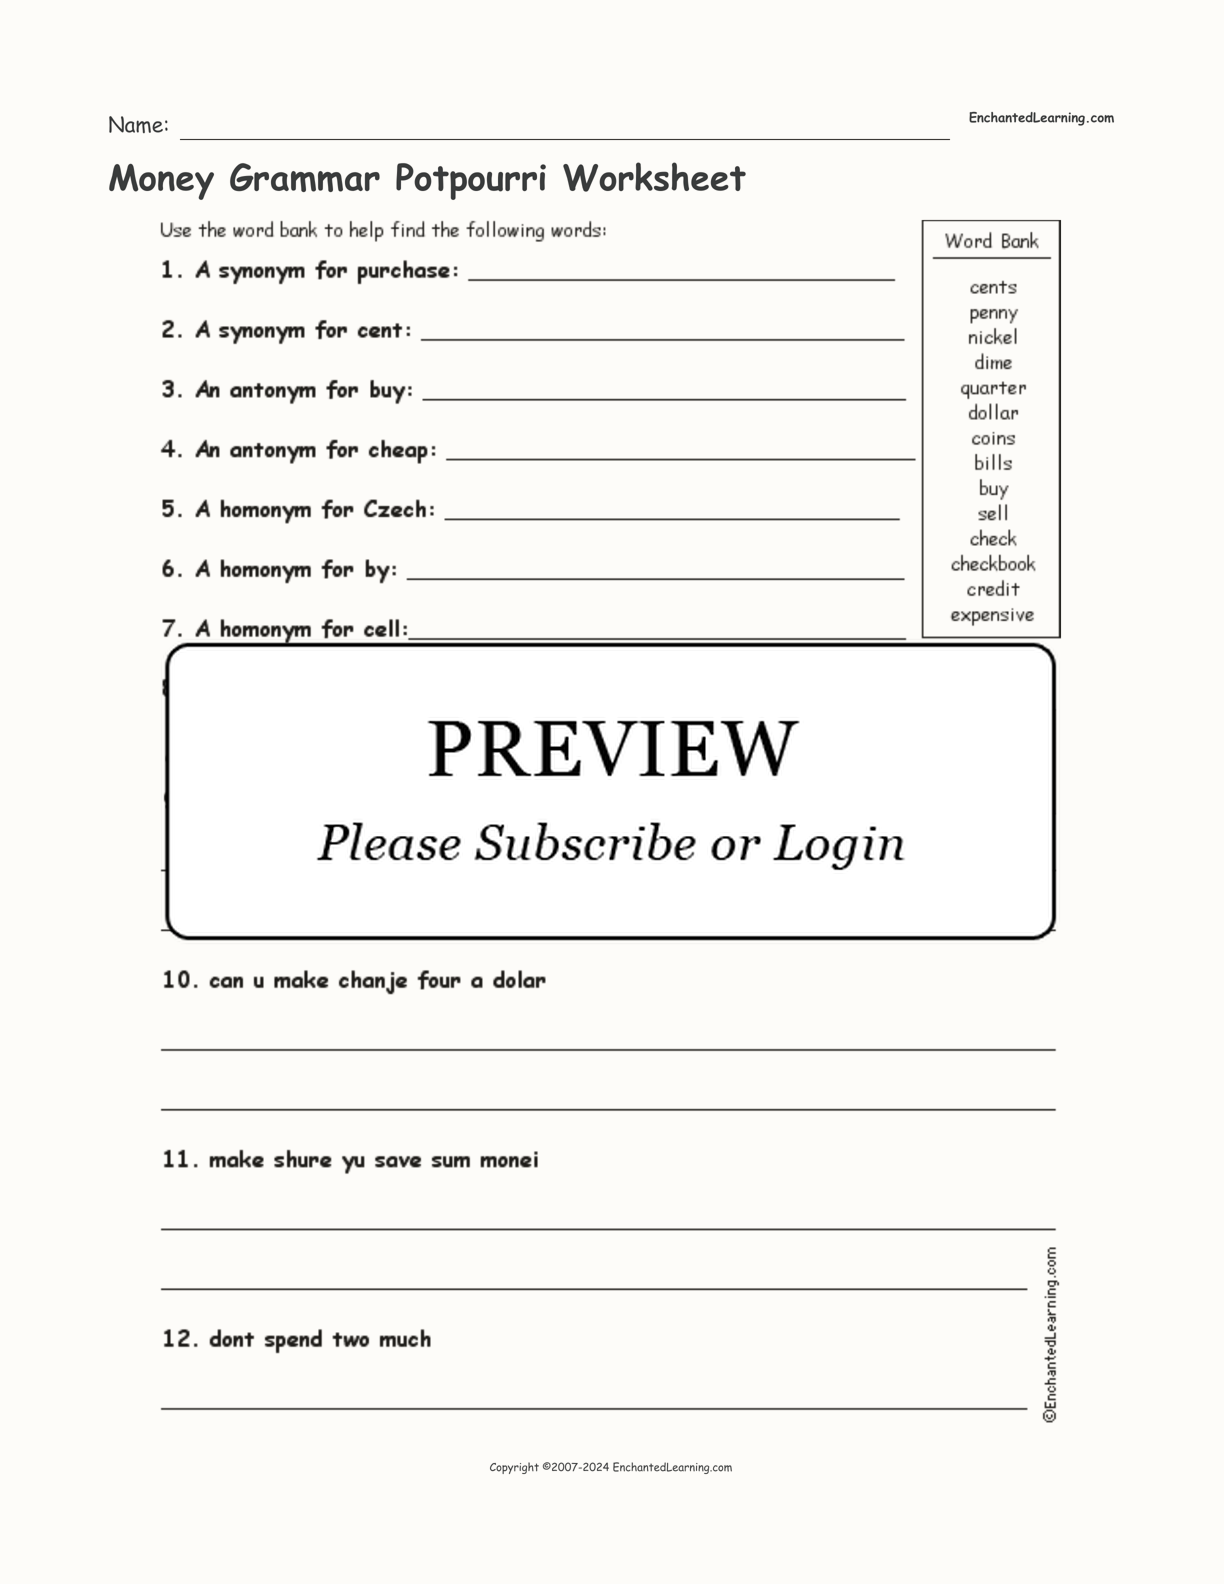 Money Grammar Potpourri Worksheet interactive worksheet page 1